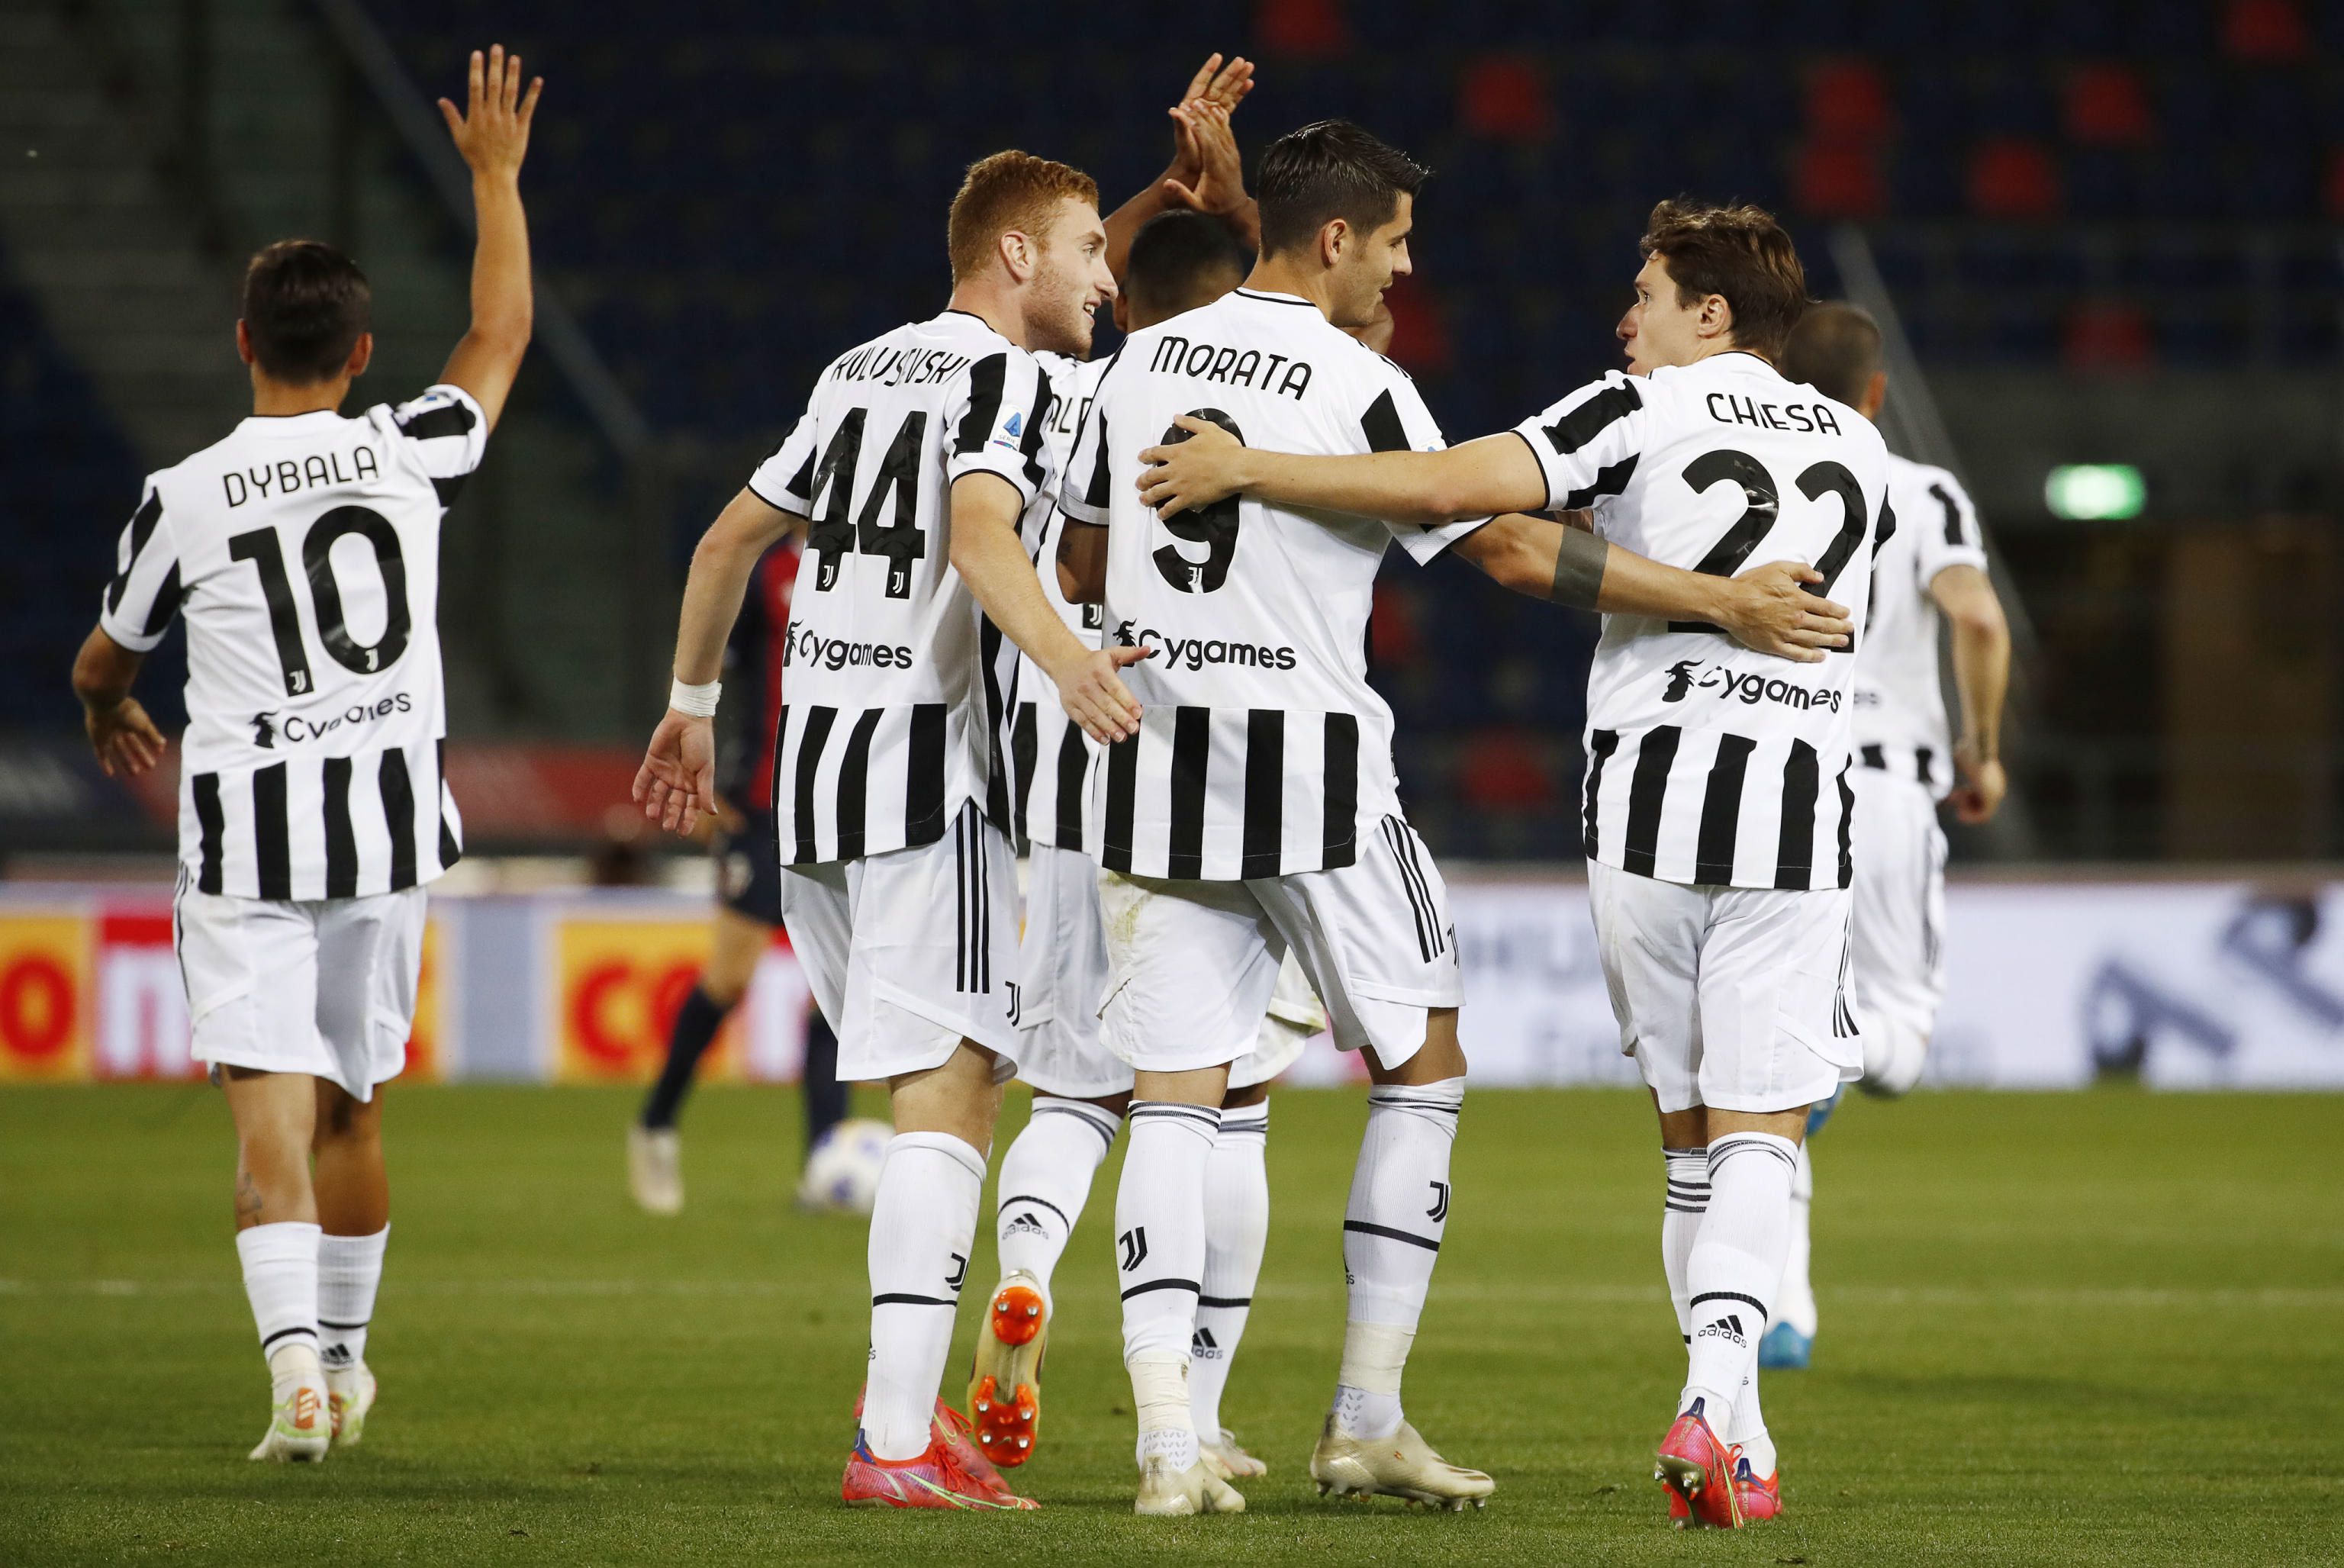 A Juventus a Veronának köszönheti a BL-t, a Milan nyolc év után kerül oda vissza. / Fotó: EPA/Elisabetta Barracchi.